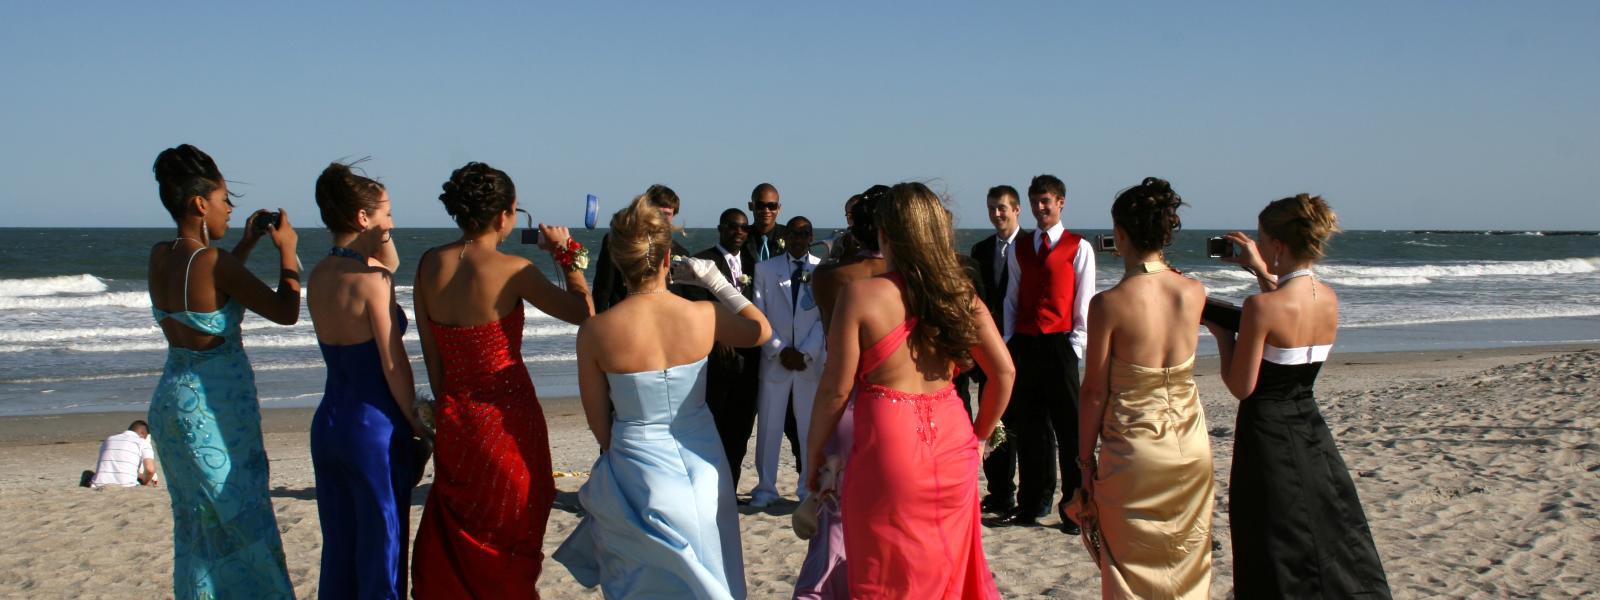 Groups Weddings Carolina Beach Nc Official Tourism Site